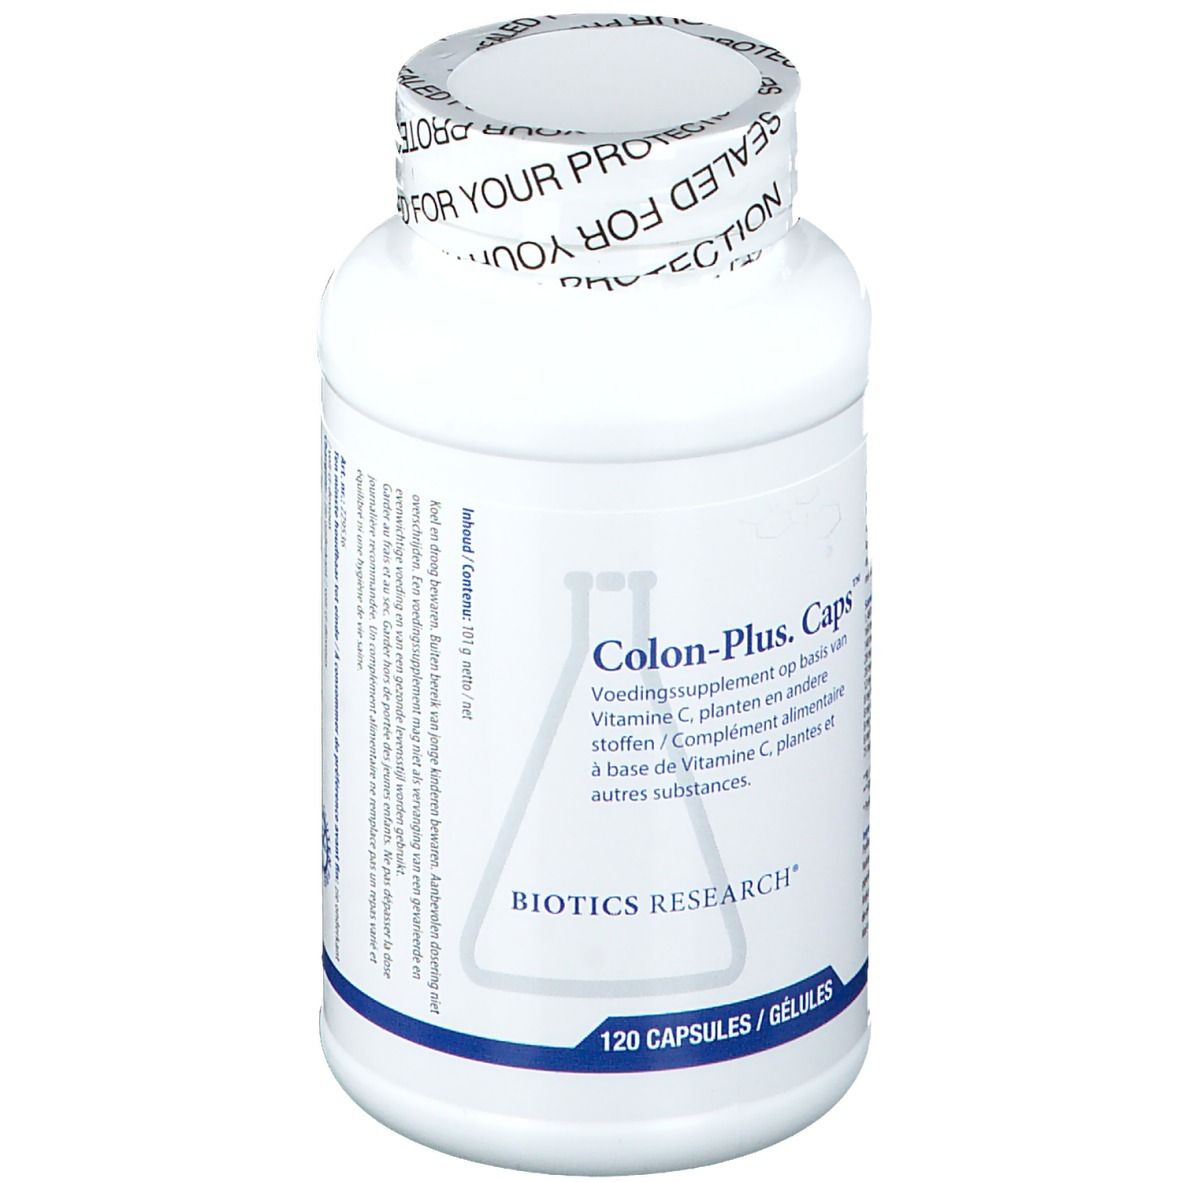 Biotics Research® Colon-Plus. Caps™